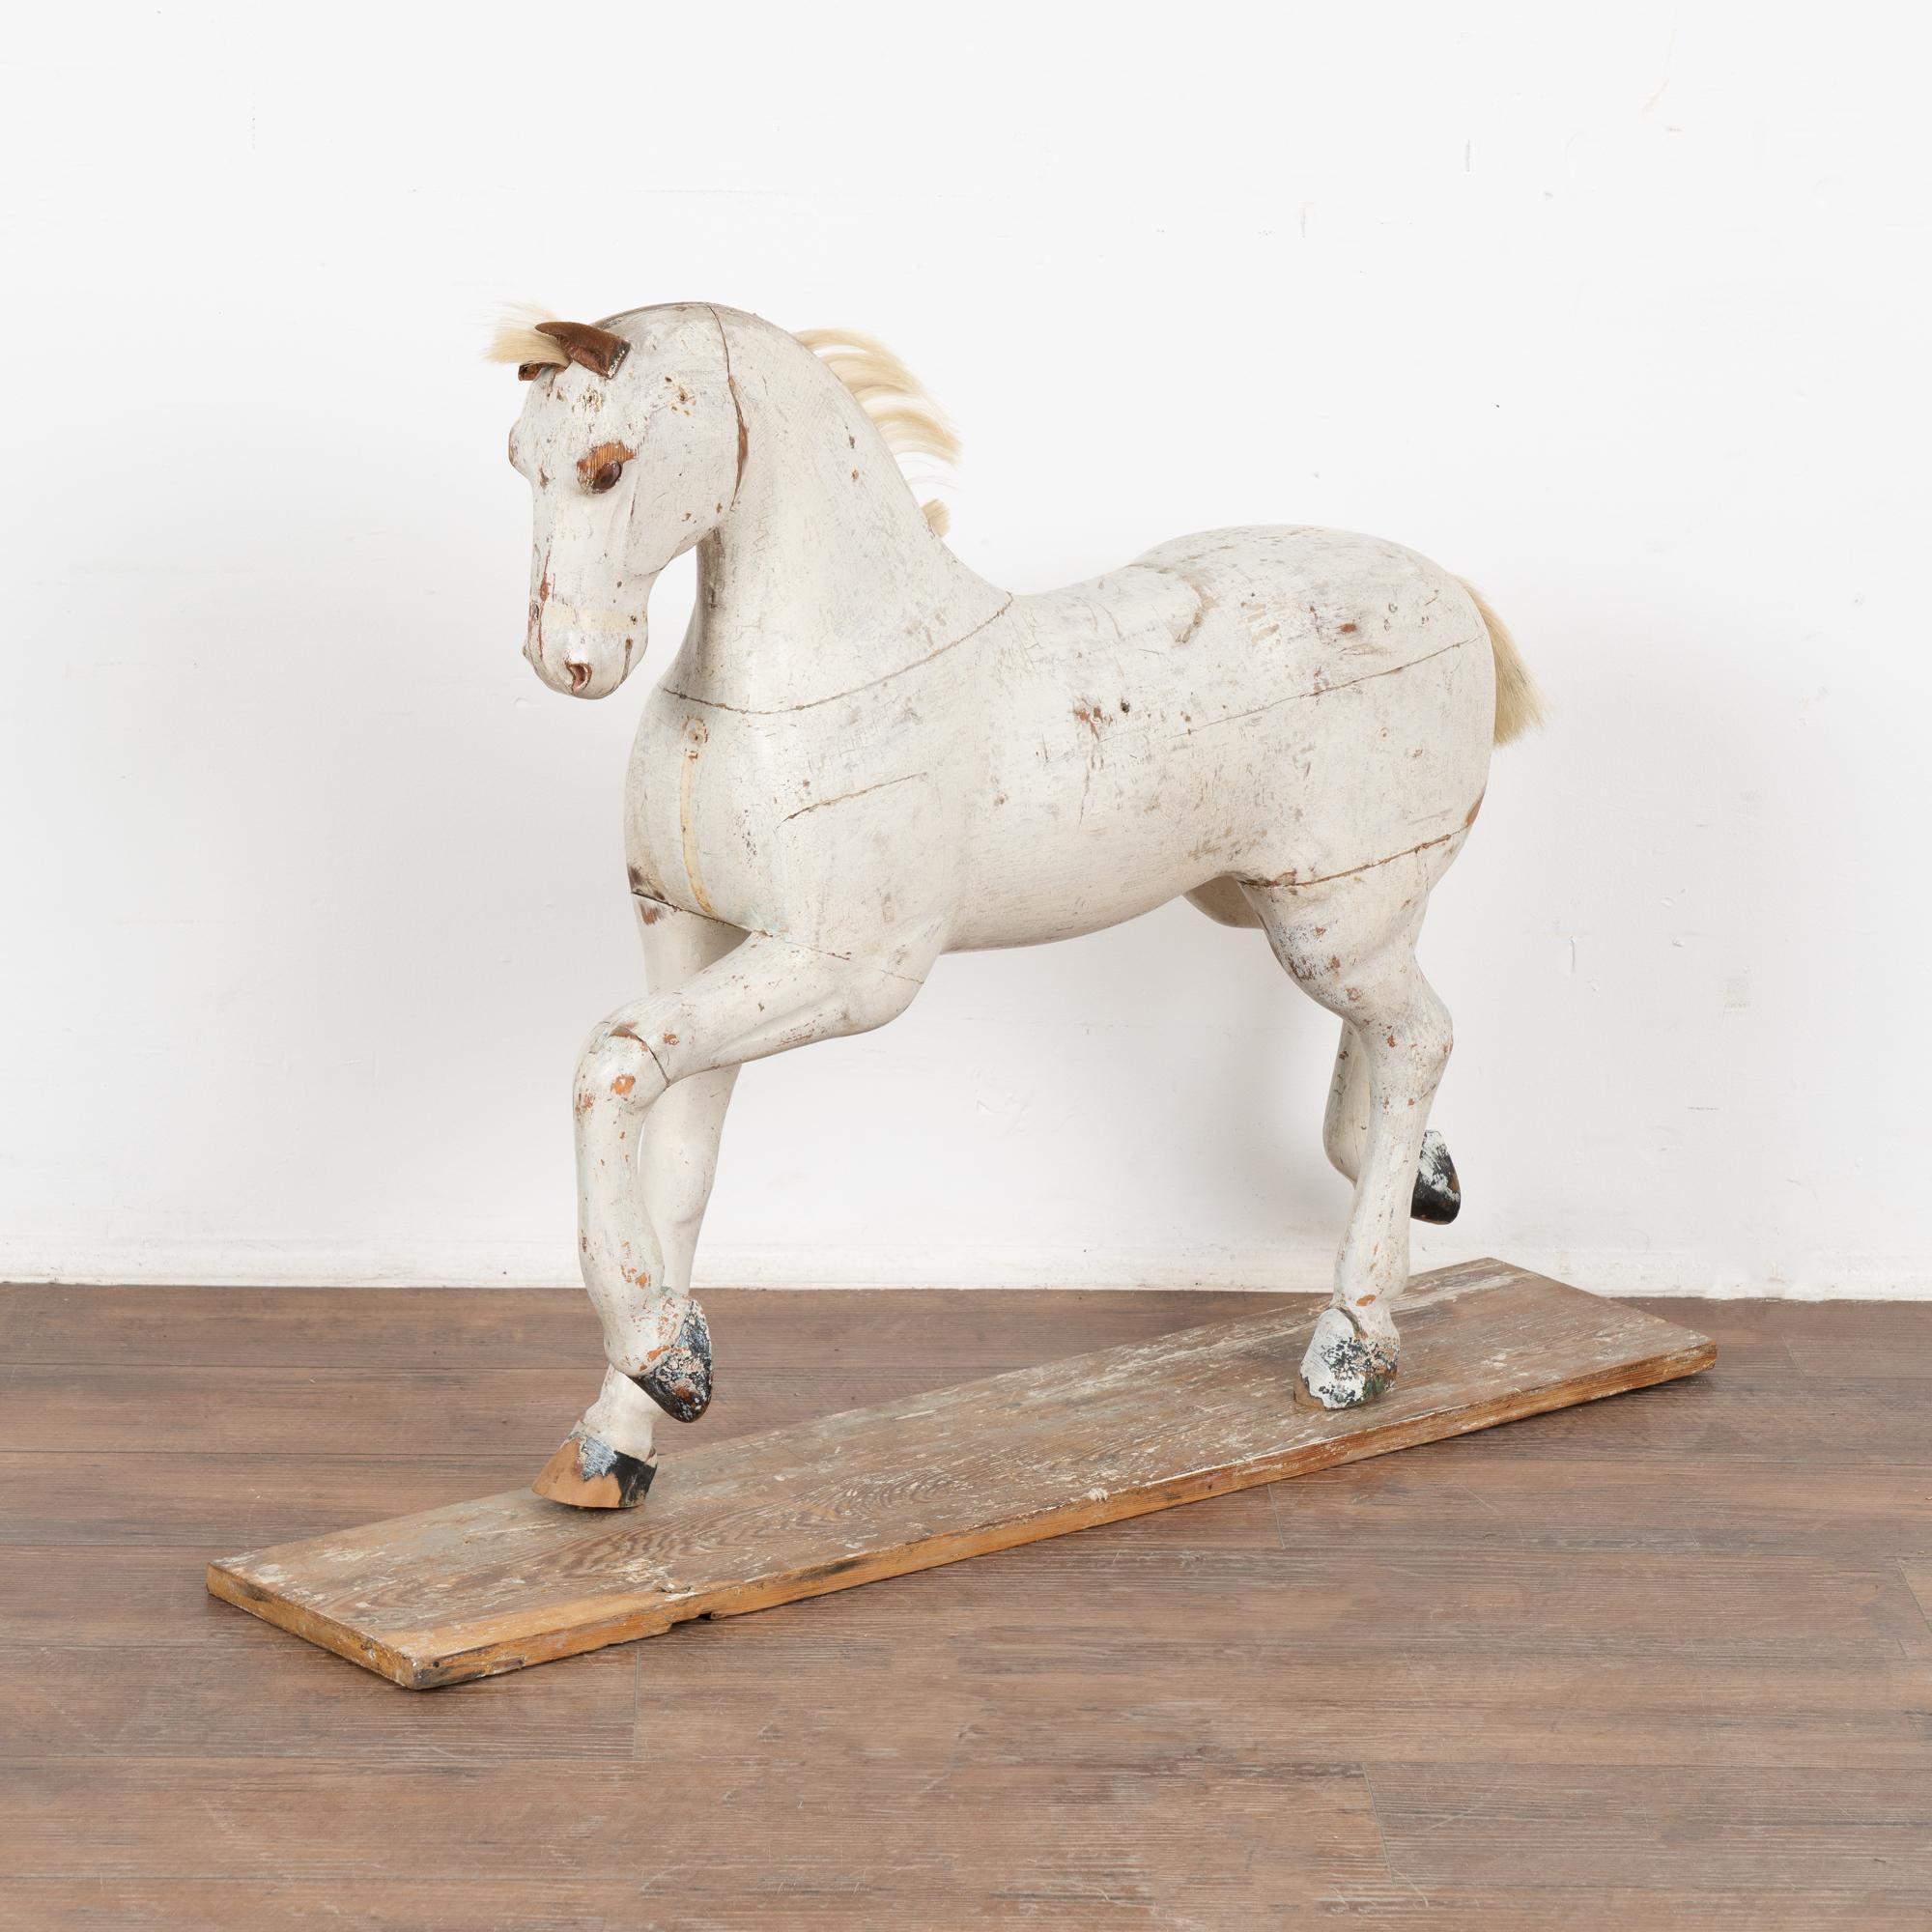 C'est l'aspect très usé de ce cheval en pin peint et sculpté, originaire de Suède, qui lui confère son attrait. 
La peinture blanche (et les sabots noirs) a été usée et abîmée jusqu'au pin ci-dessous, tandis que les oreilles en cuir en lambeaux et